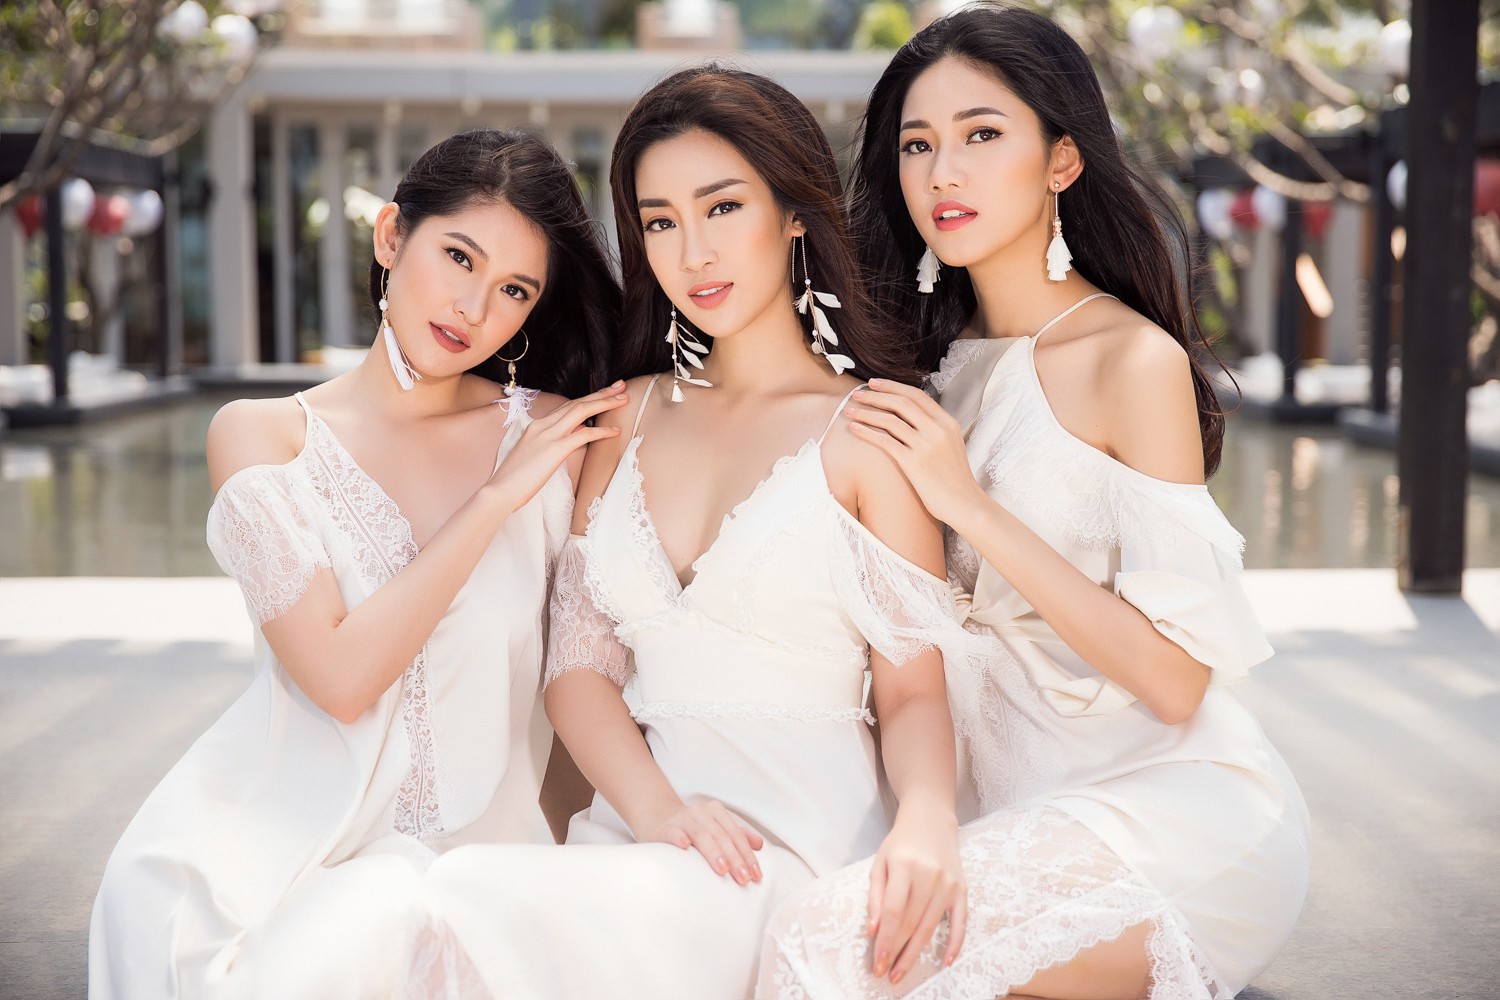 Ghen tỵ với bộ ảnh đẹp lung linh của Hội bạn thân Hoa hậu Mỹ Linh - Thùy Dung - Thanh Tú - Ảnh 15.